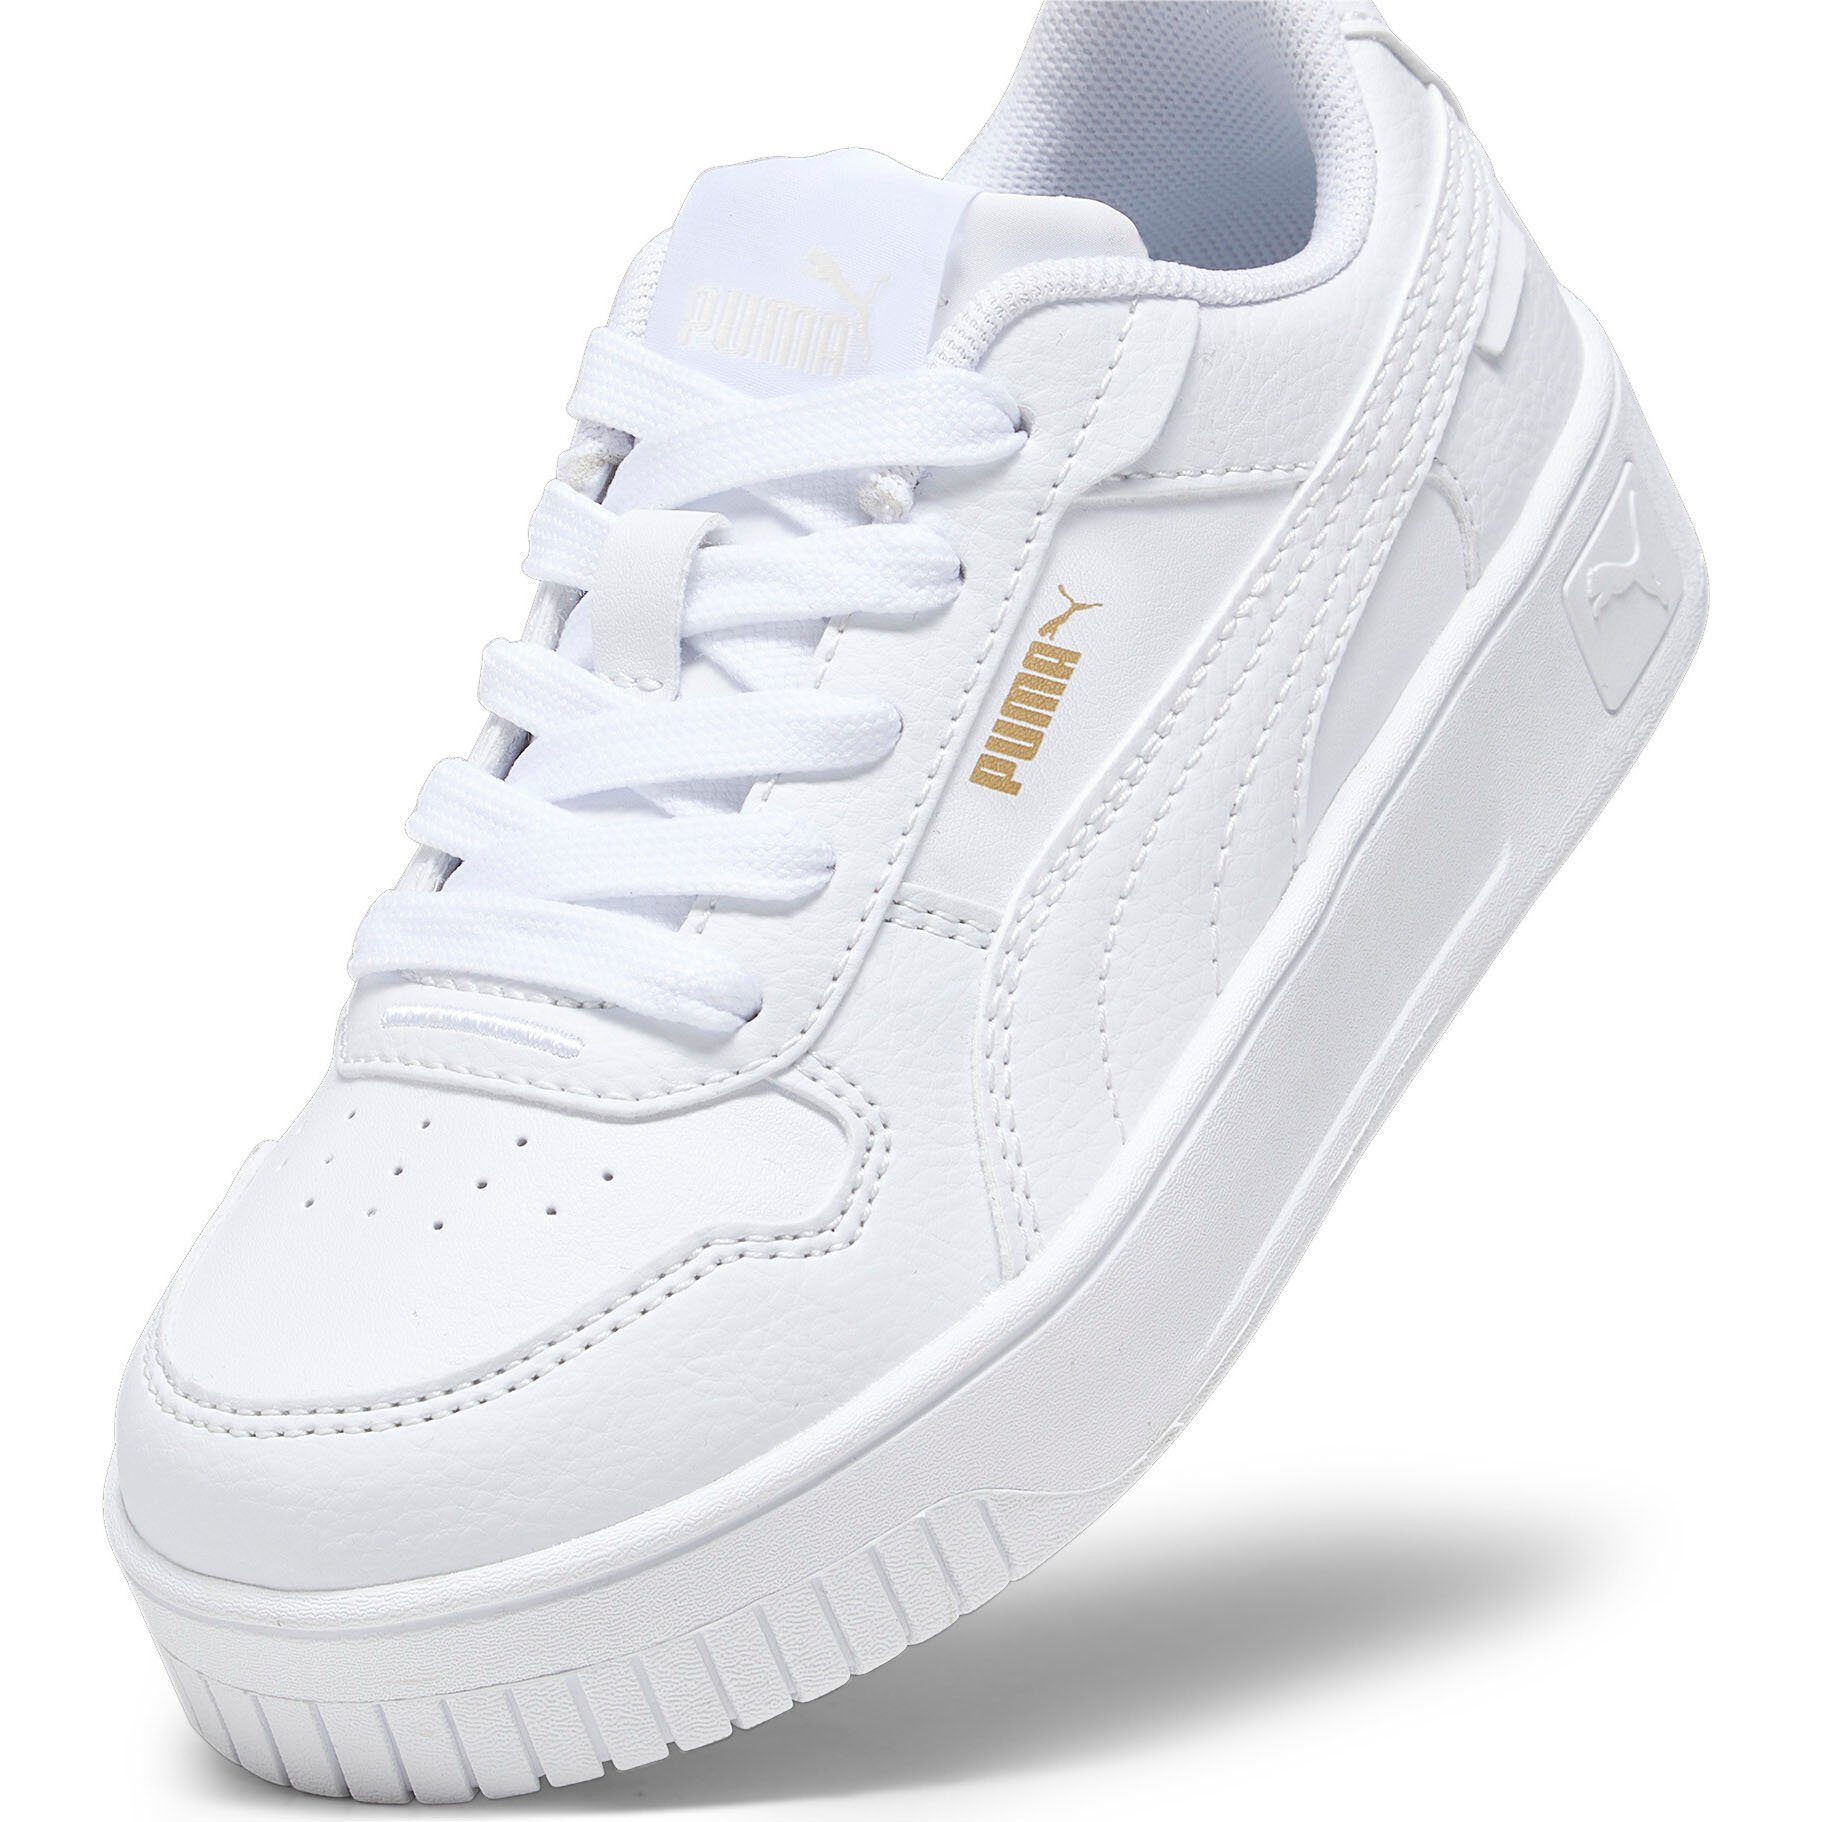 PUMA CARINA STREET Sneaker PS White-PUMA White-PUMA PUMA Gold